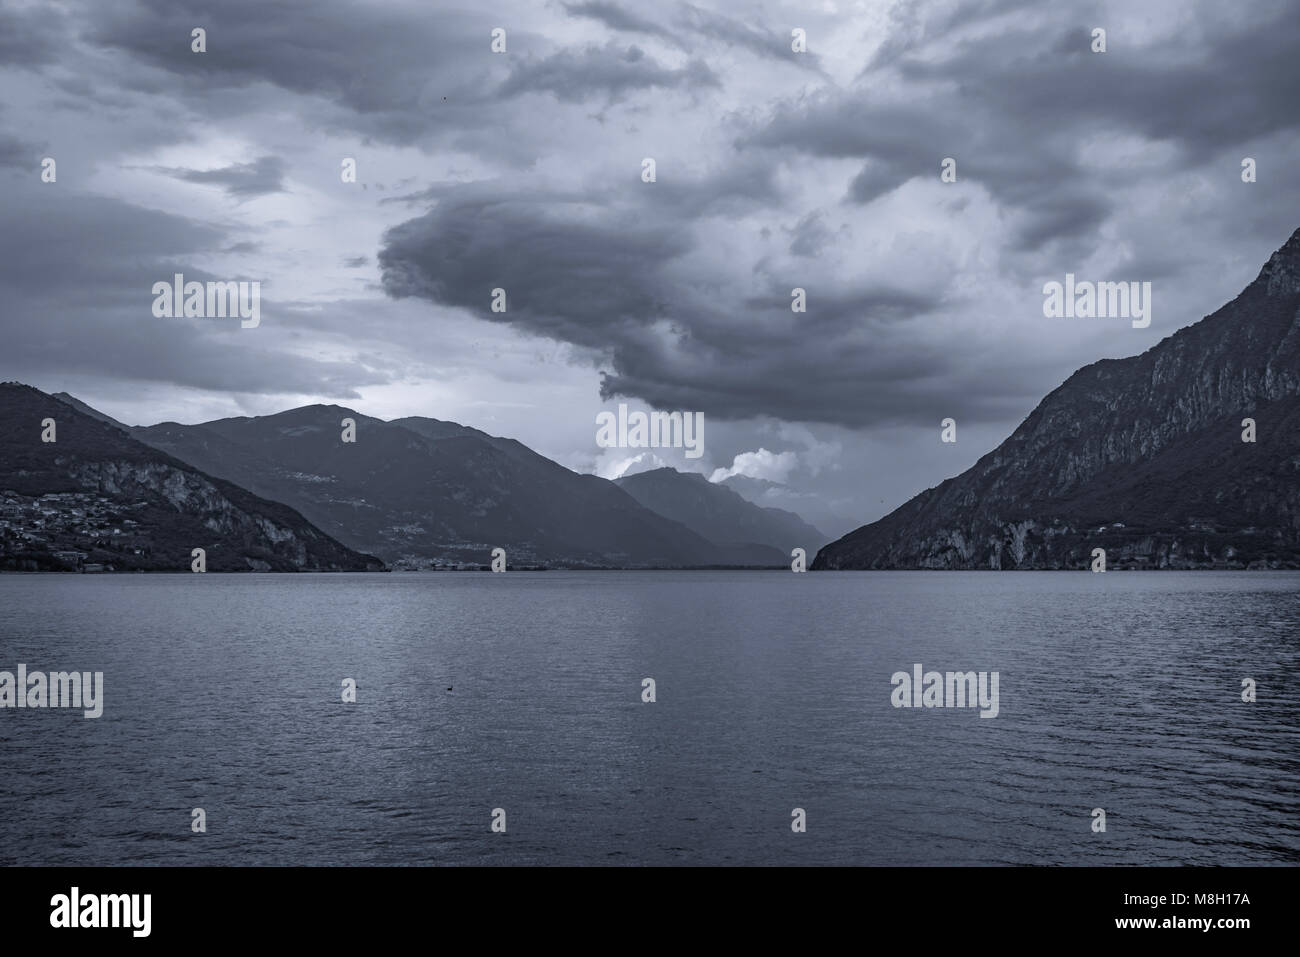 Tempête d'été sur le lac - Lago d'Iseo - Italie Banque D'Images